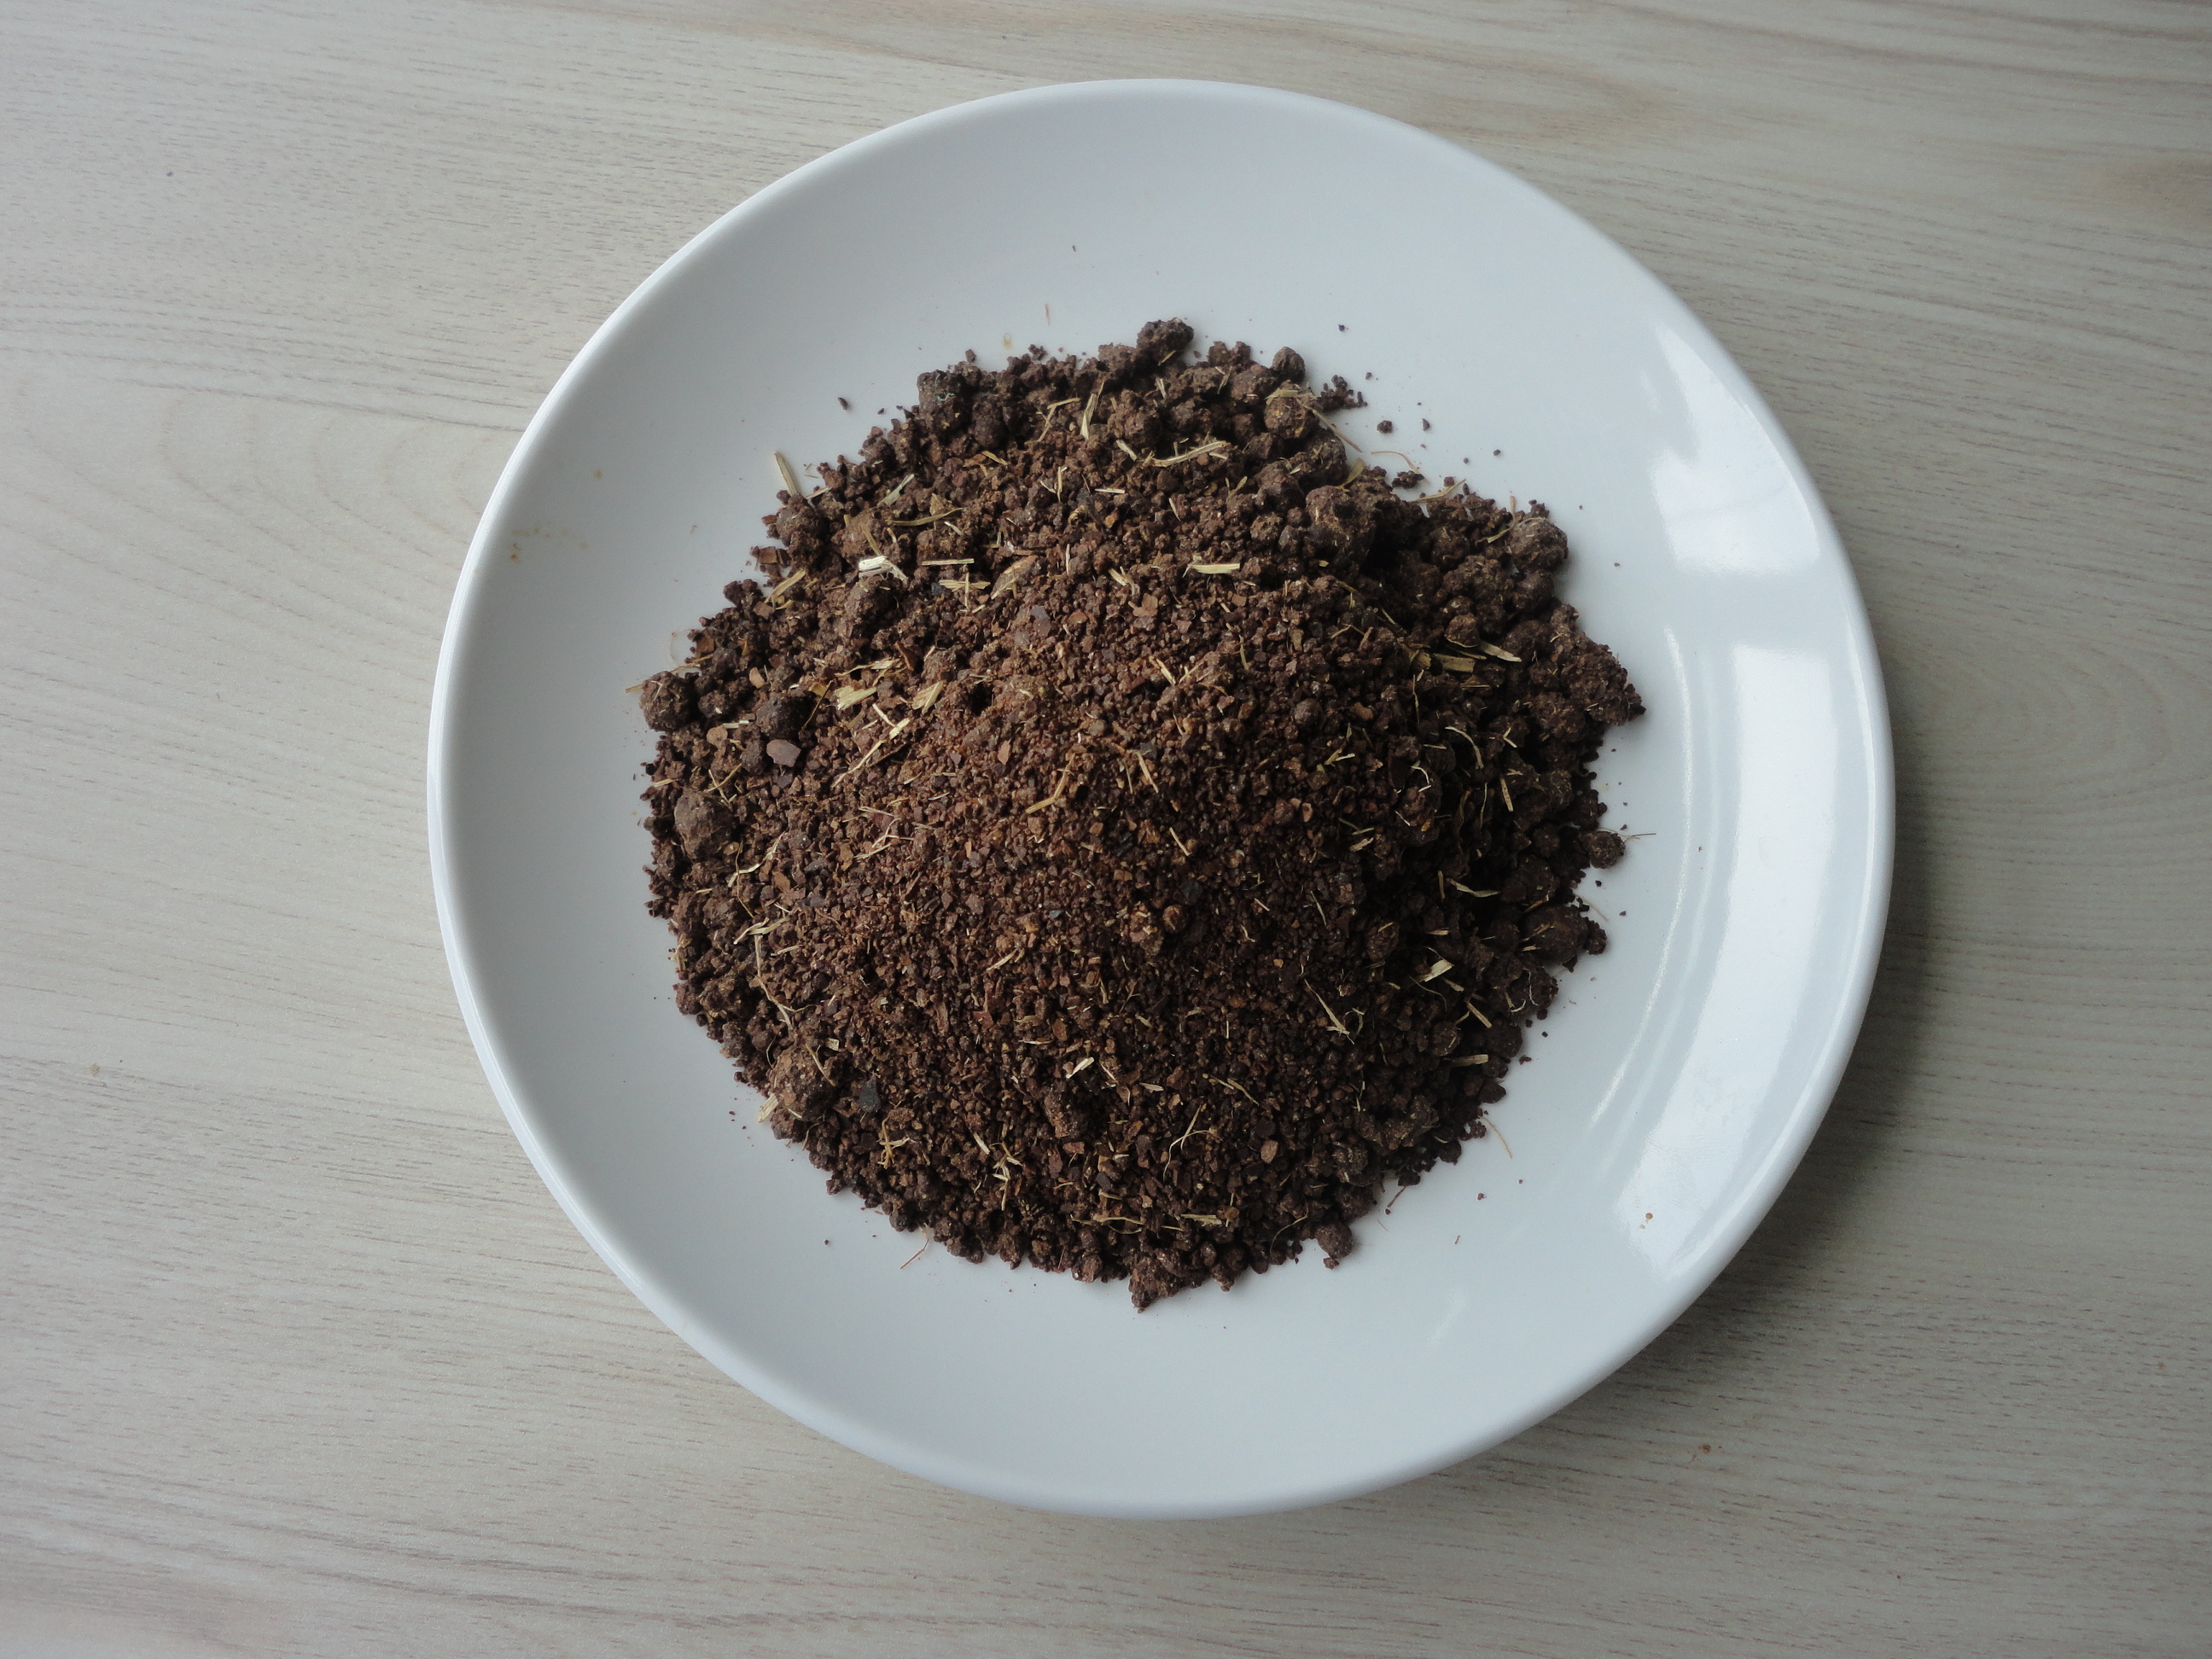 茶粕 可用作虾蟹养殖清塘剂、有机肥料、杀虫剂、农药助剂和饲料添加剂 工厂直销